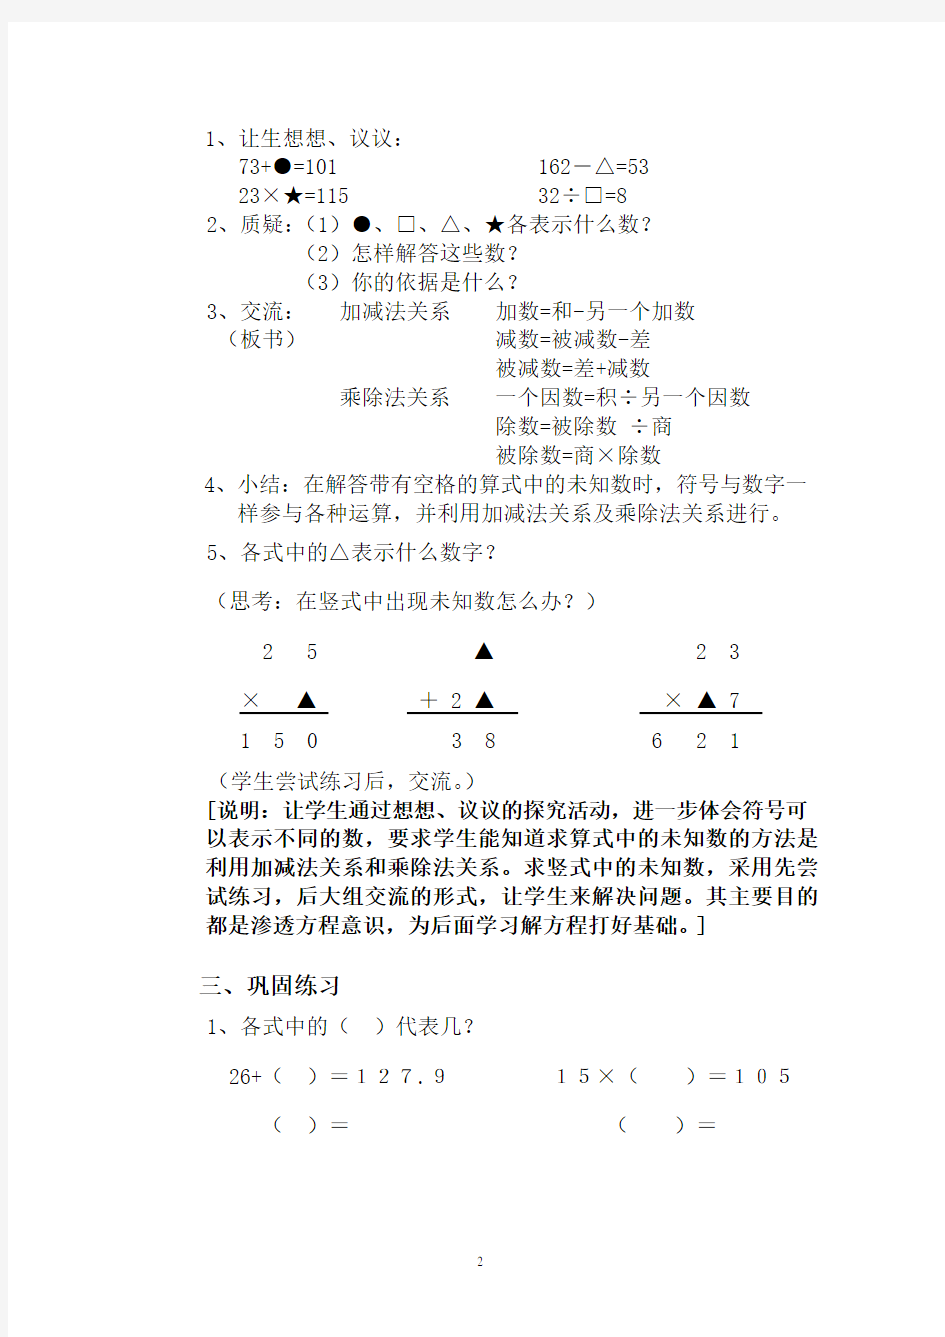 沪教版小学五年级数学上册教案全册(2020年10月整理).pdf